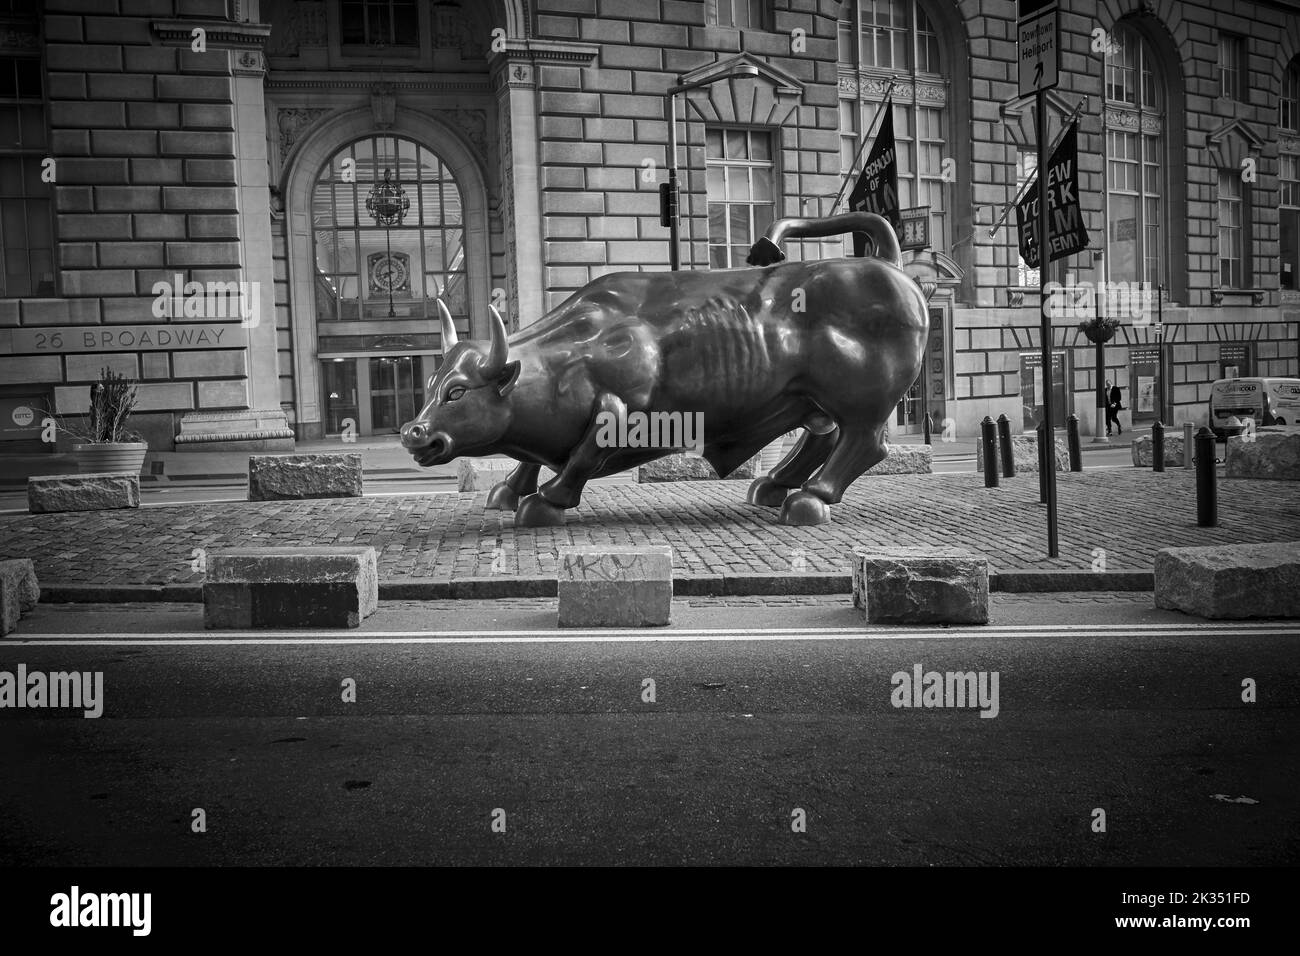 La ricarica di Bull è una popolare destinazione turistica che attira migliaia di persone, simboleggiando Wall Street e il quartiere finanziario. Foto Stock